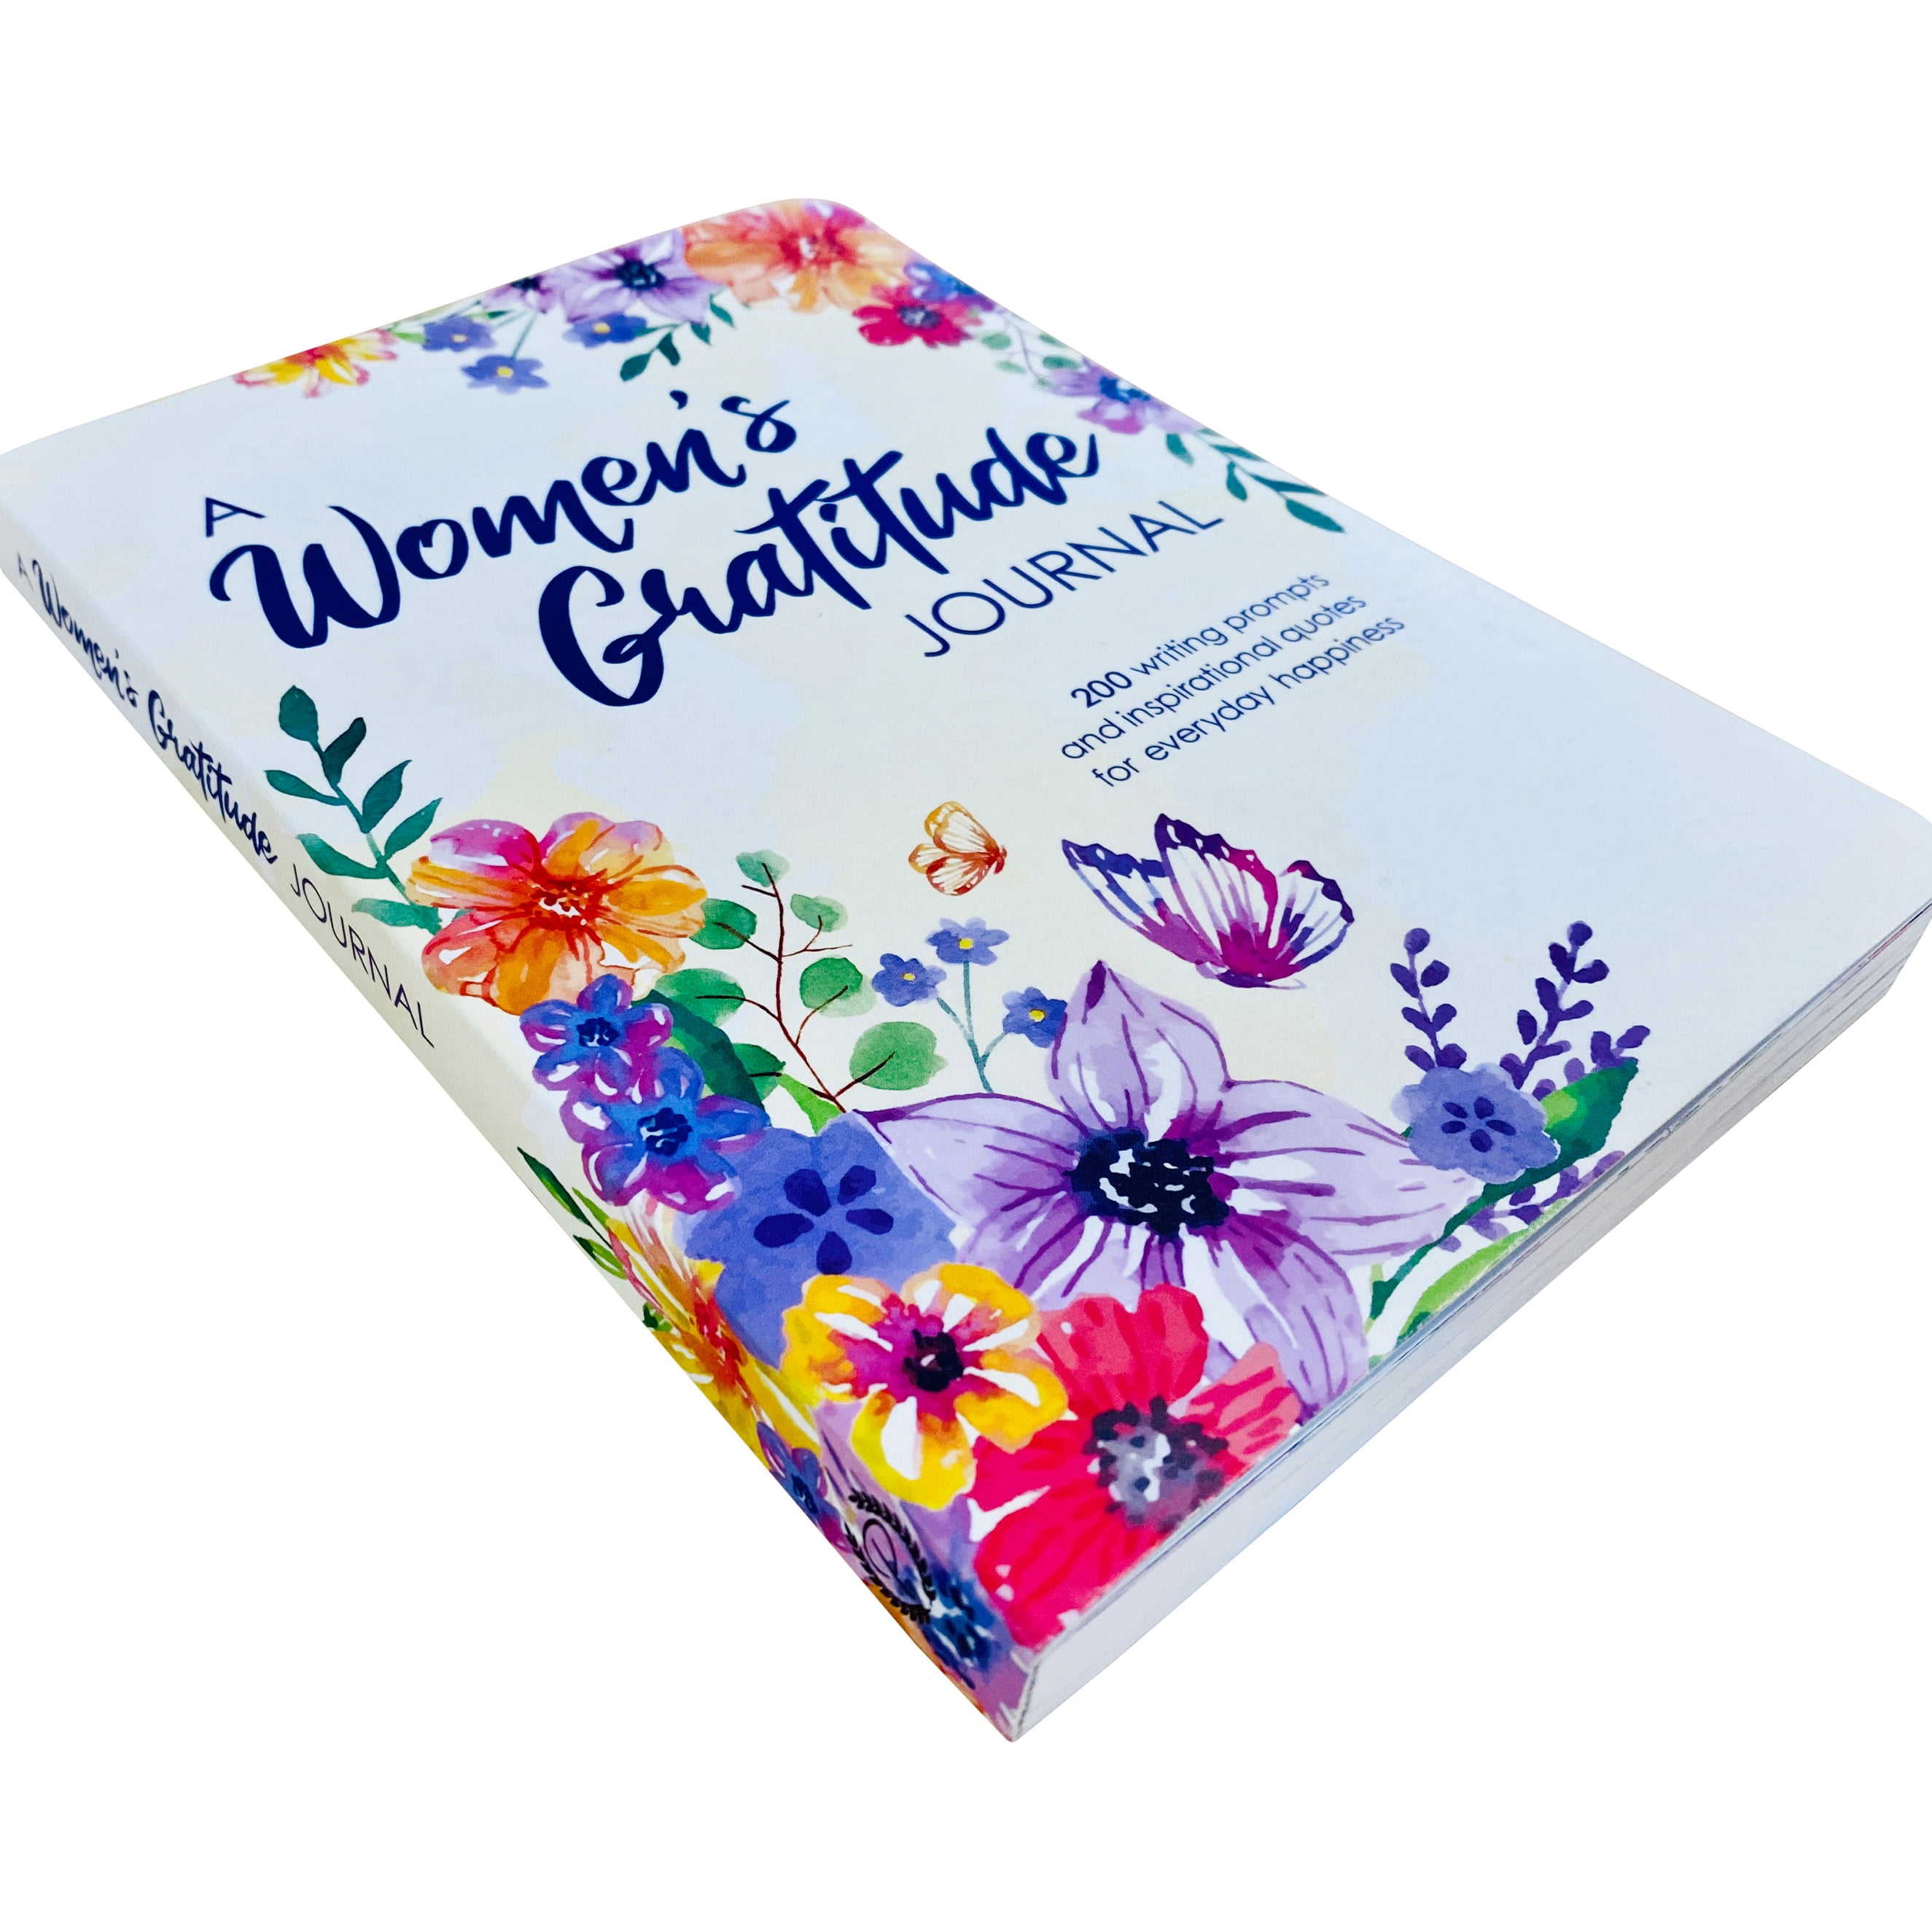 Gratitude Journal : A Journal For Women